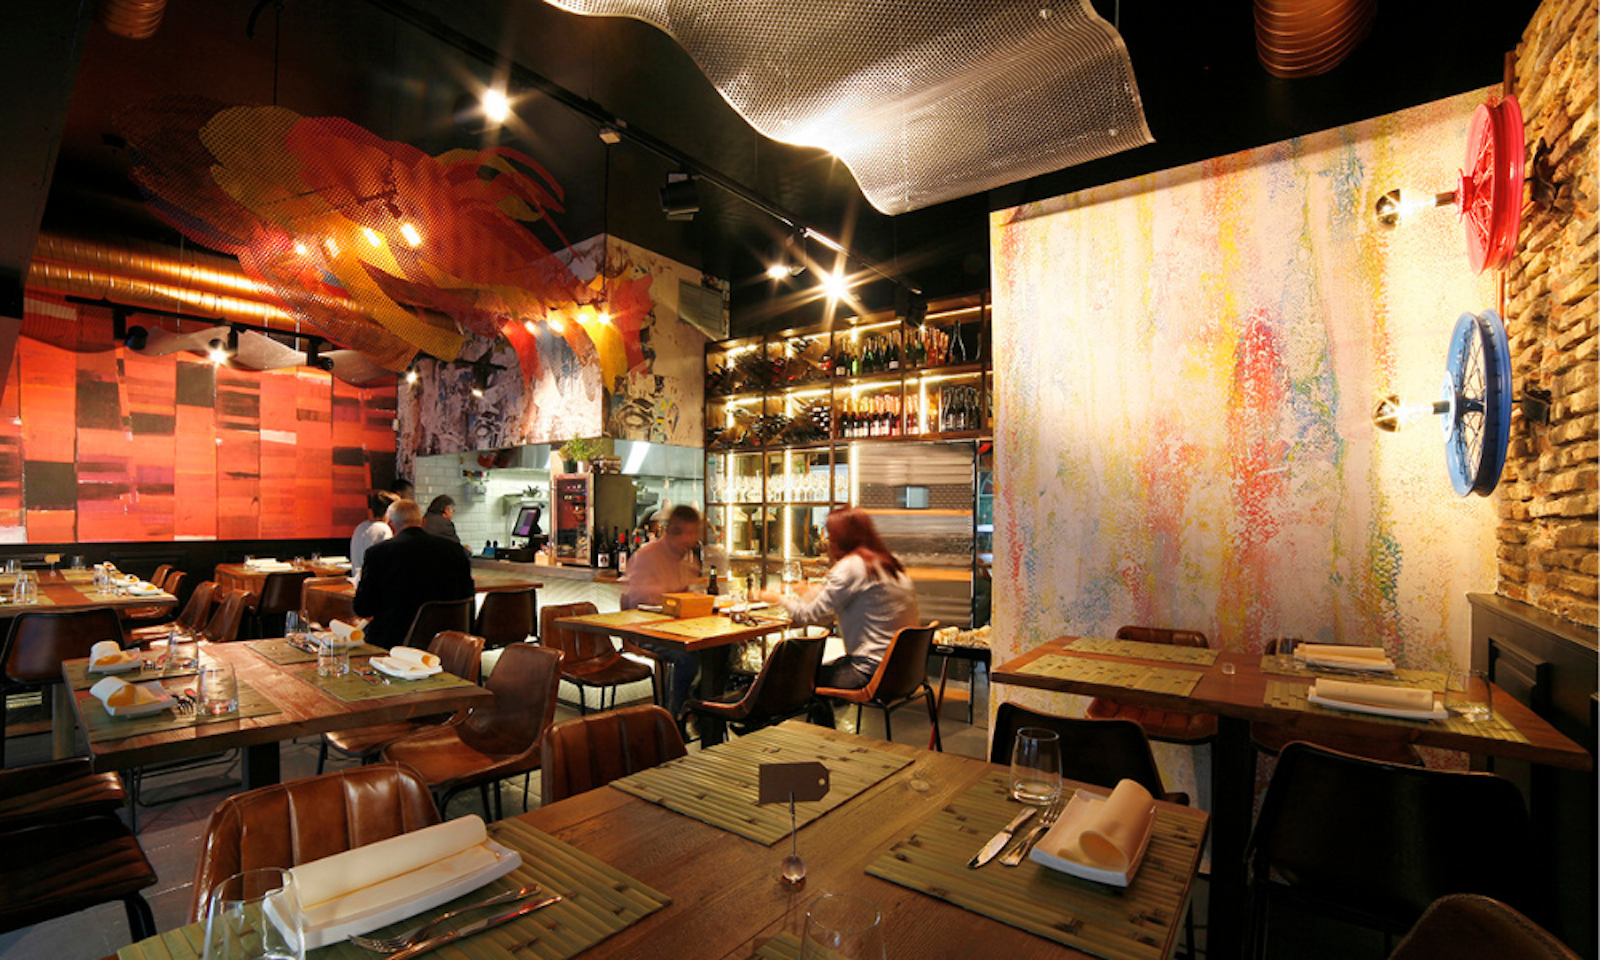 imagen 7 de La Antxoeta, un restaurante la mar de artístico.